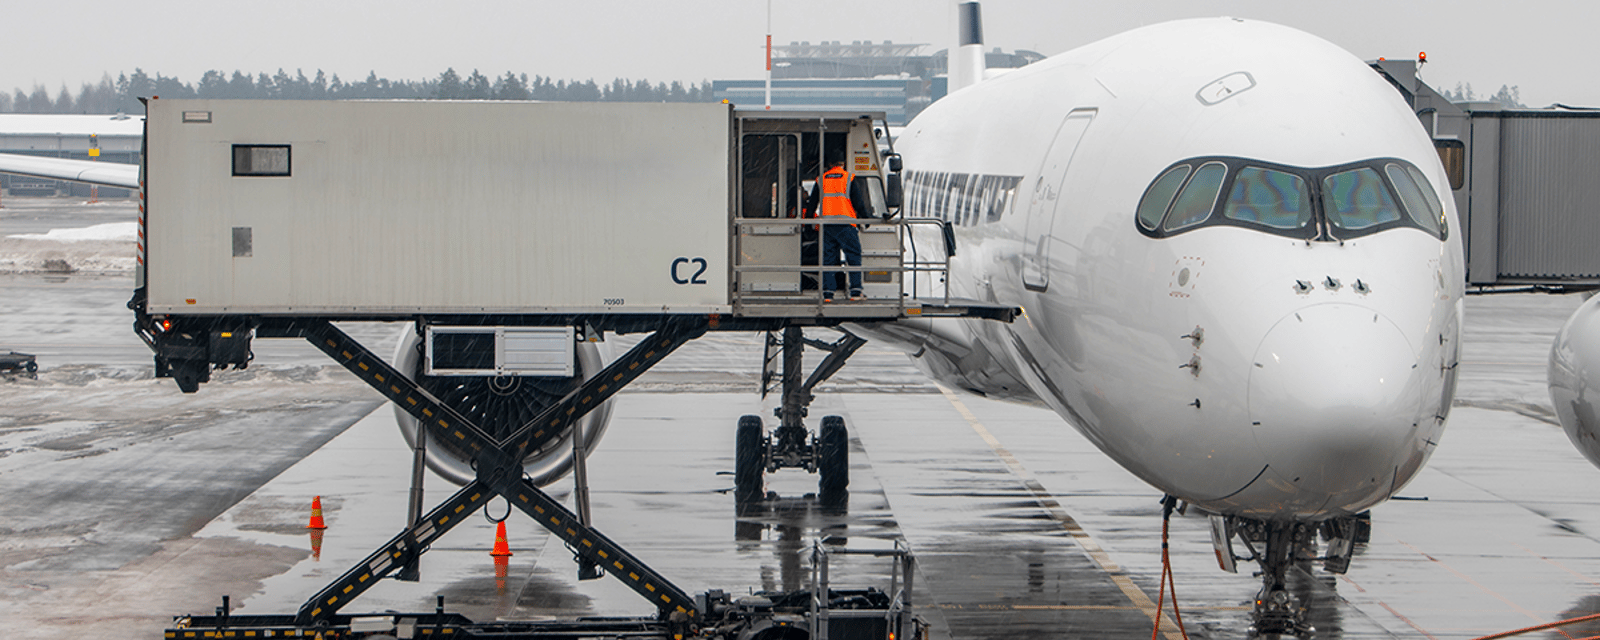 Une compagnie aérienne commence à peser ses passagers avant d'embarquer dans l'avion